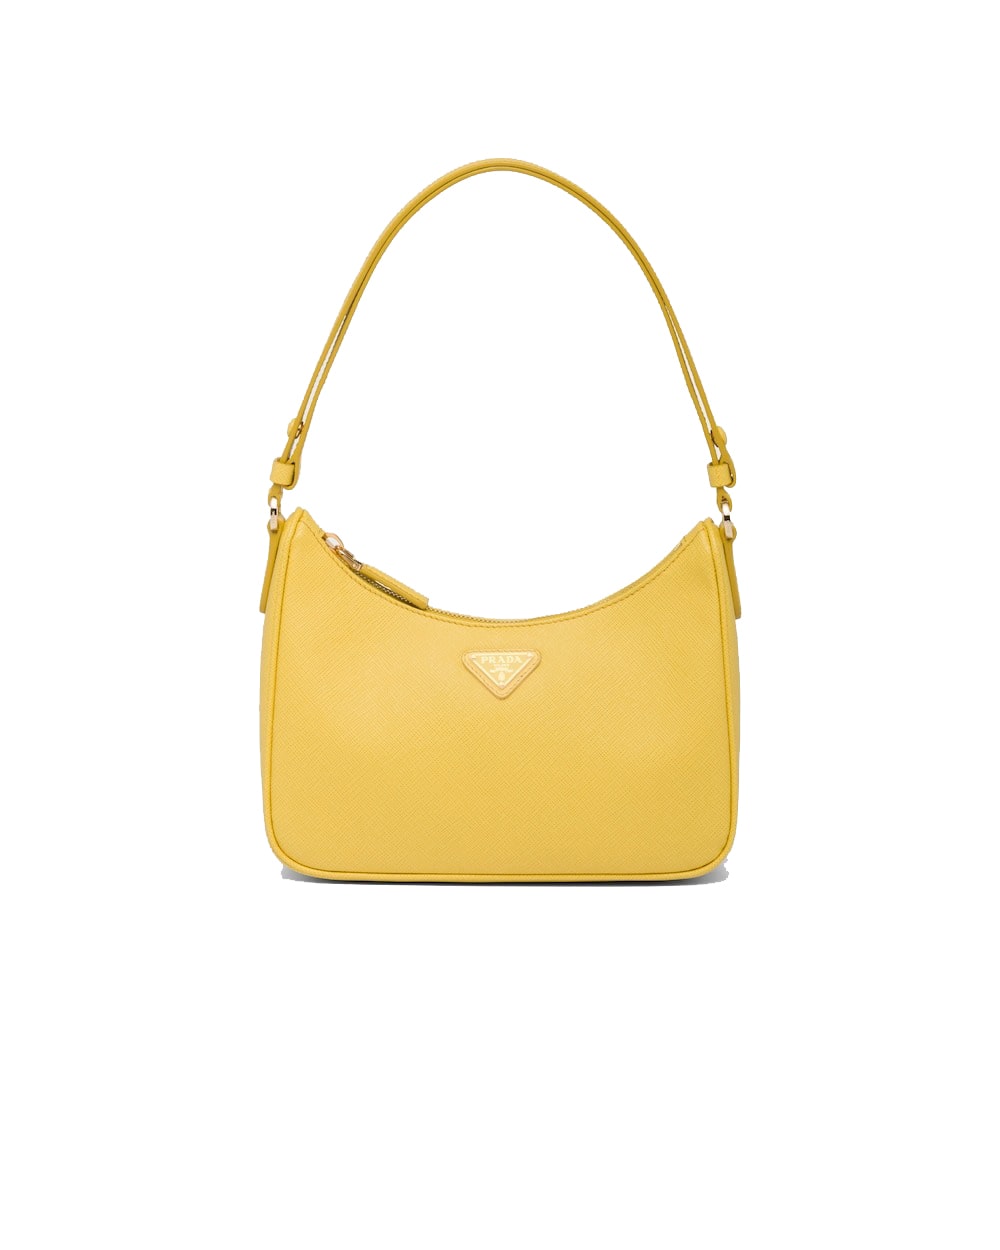 Saffiano leather mini bag sunny yellow